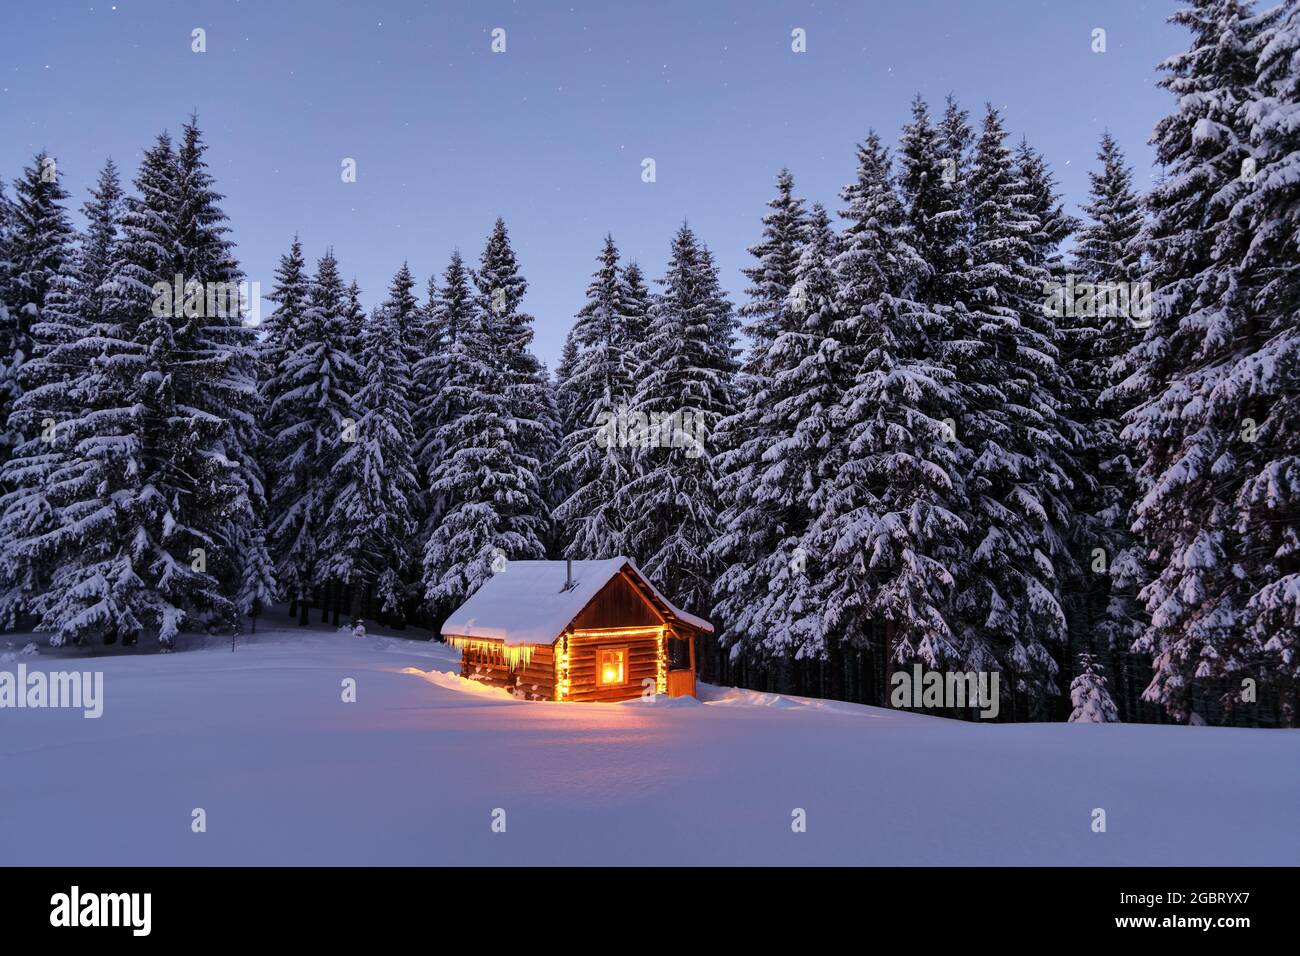 Holzhütte auf dem mit Schnee bedeckten Rasen. Abends leuchten die Lampen das Haus auf. Winterlandschaft. Mystische Nacht. Berge und Wälder. W Stockfoto